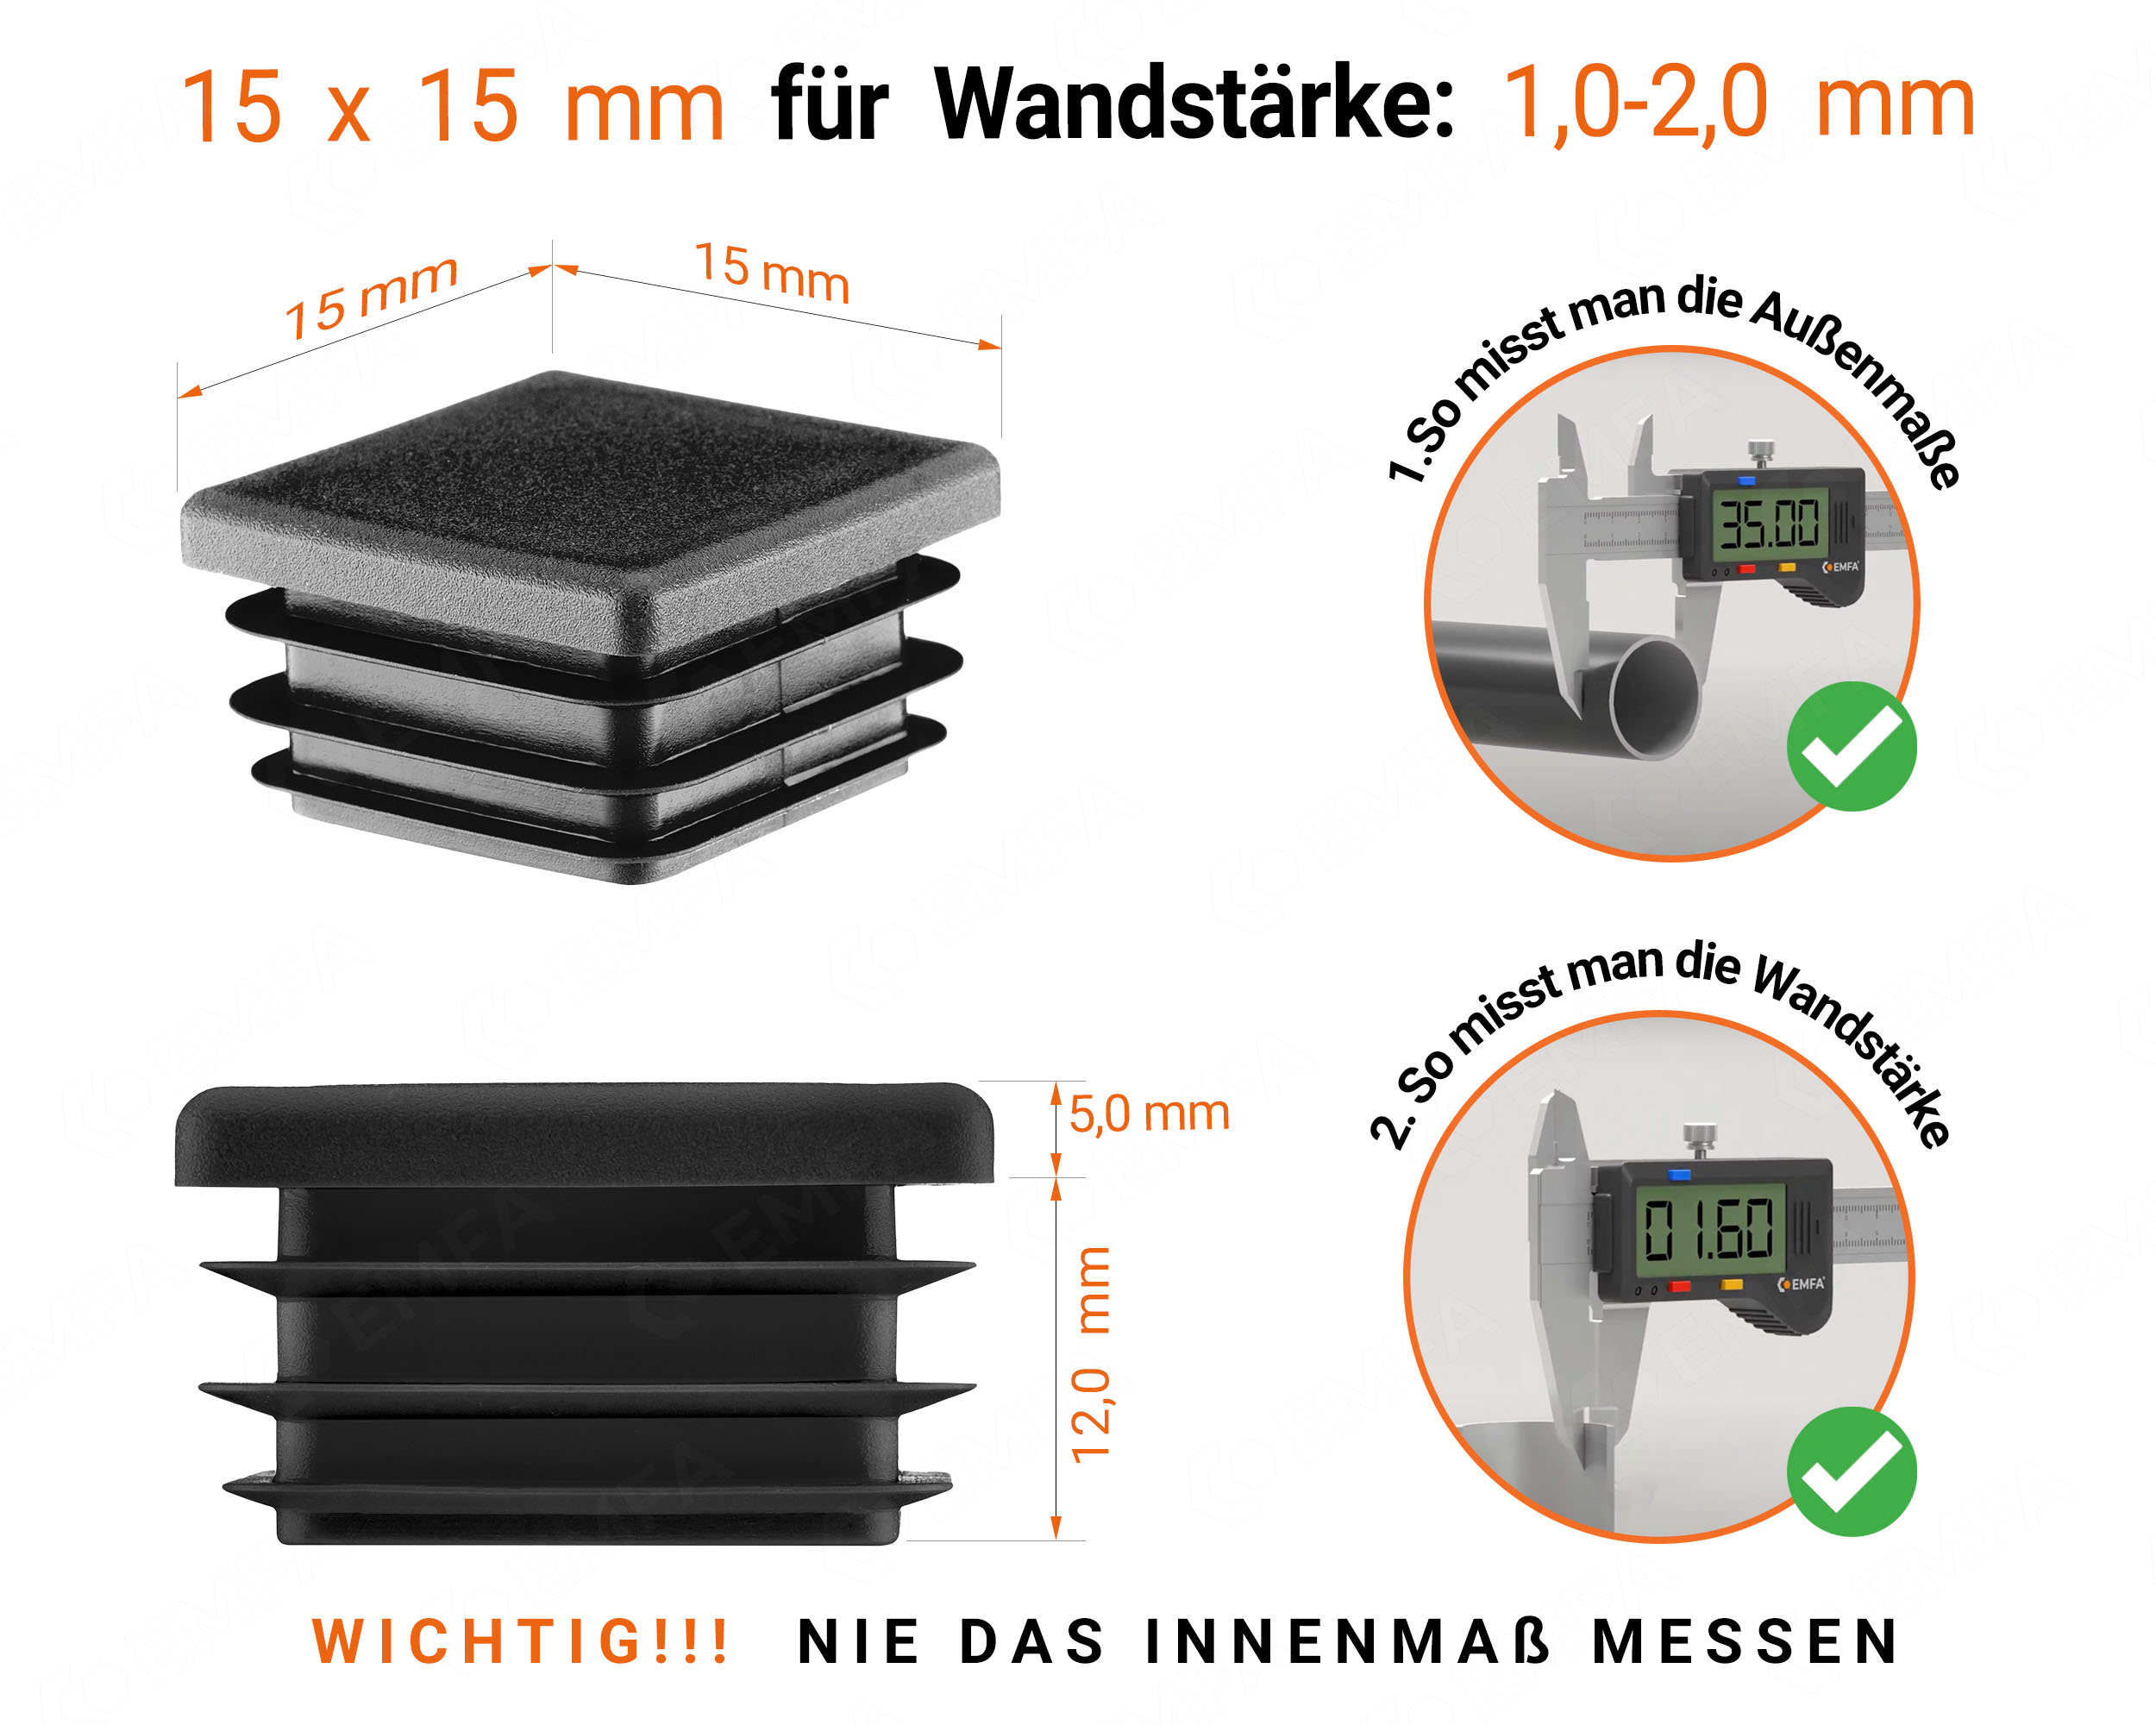 Schwarze Endkappe für Vierkantrohre in der Größe 15x15 mm mit technischen Abmessungen und Anleitung für korrekte Messung